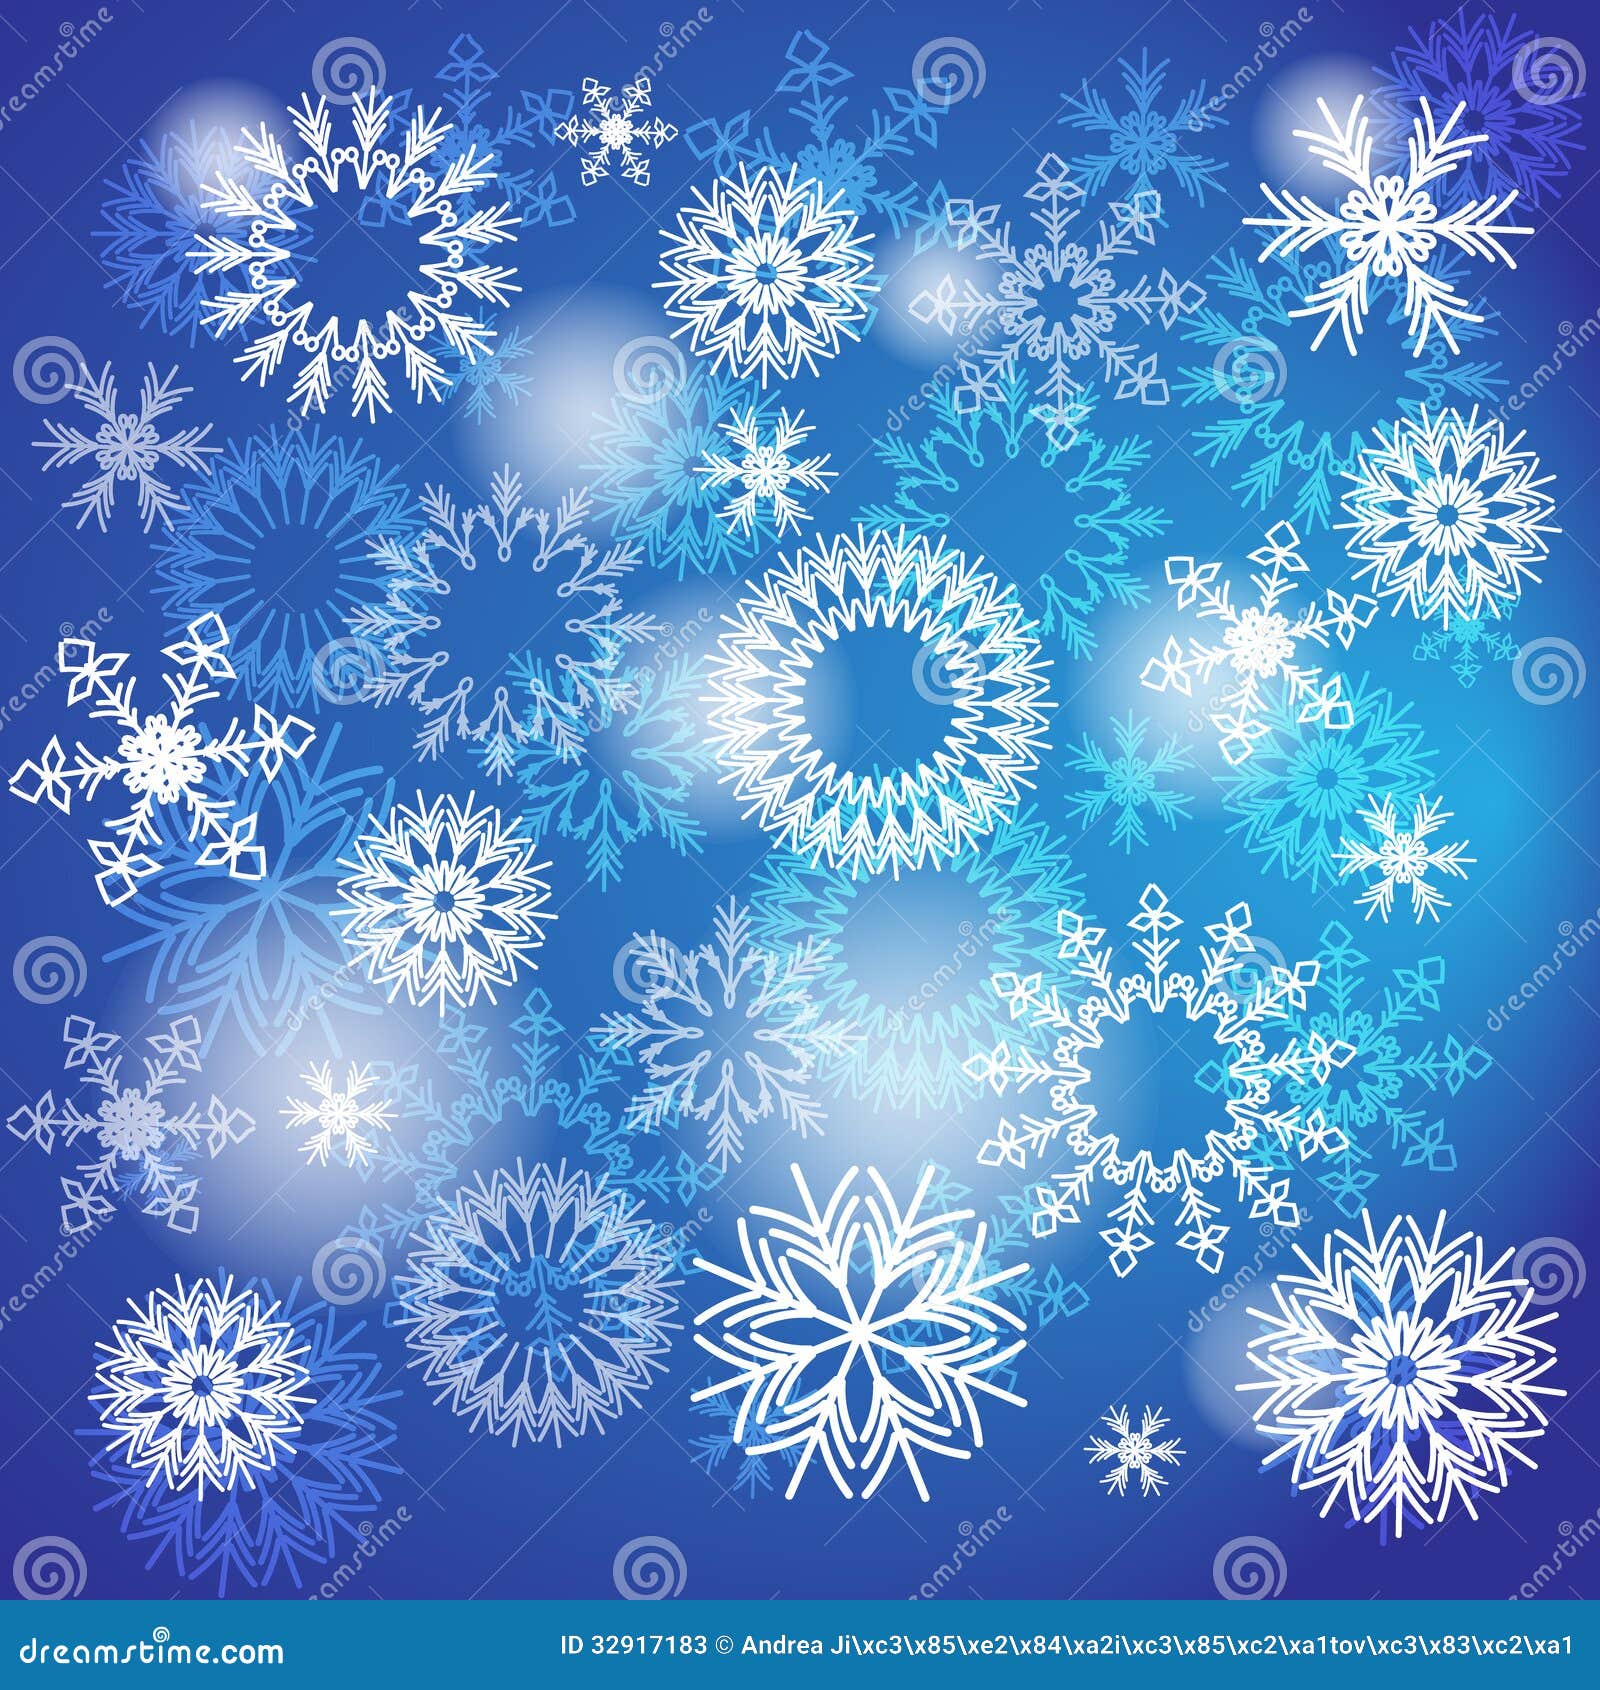 Schneeflockenhintergrund. Die weißen Schneeflocken auf dem blauen Hintergrund